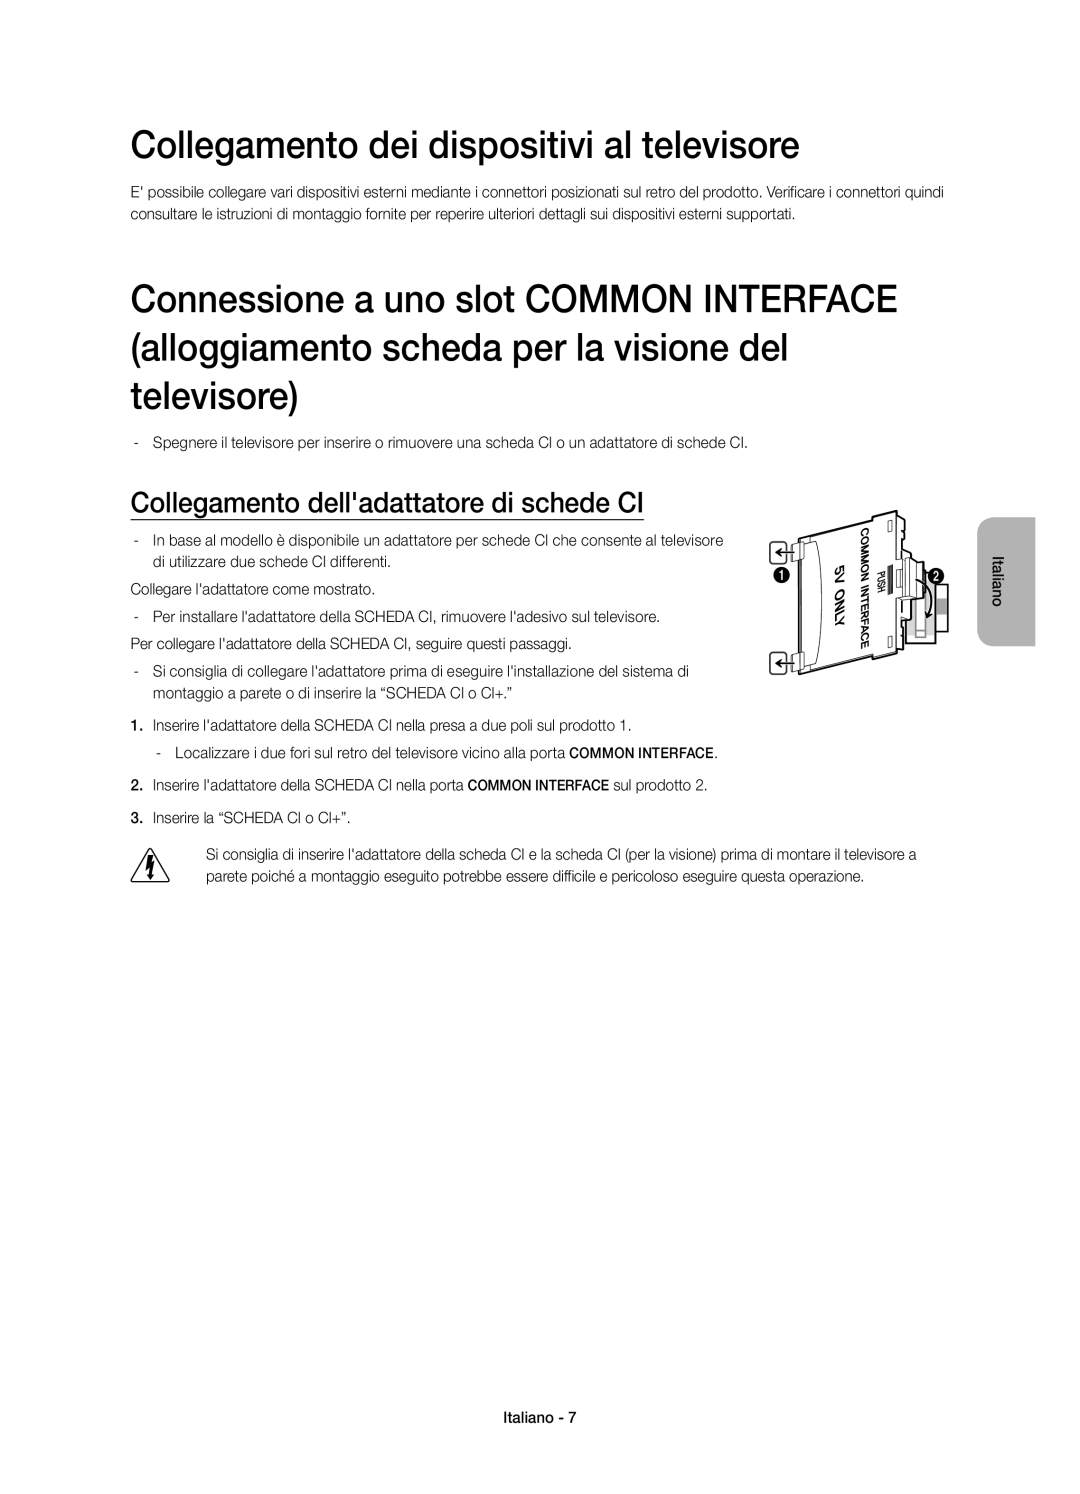 Samsung UE40H6740SVXZG manual Collegamento dei dispositivi al televisore, Collegamento delladattatore di schede CI 